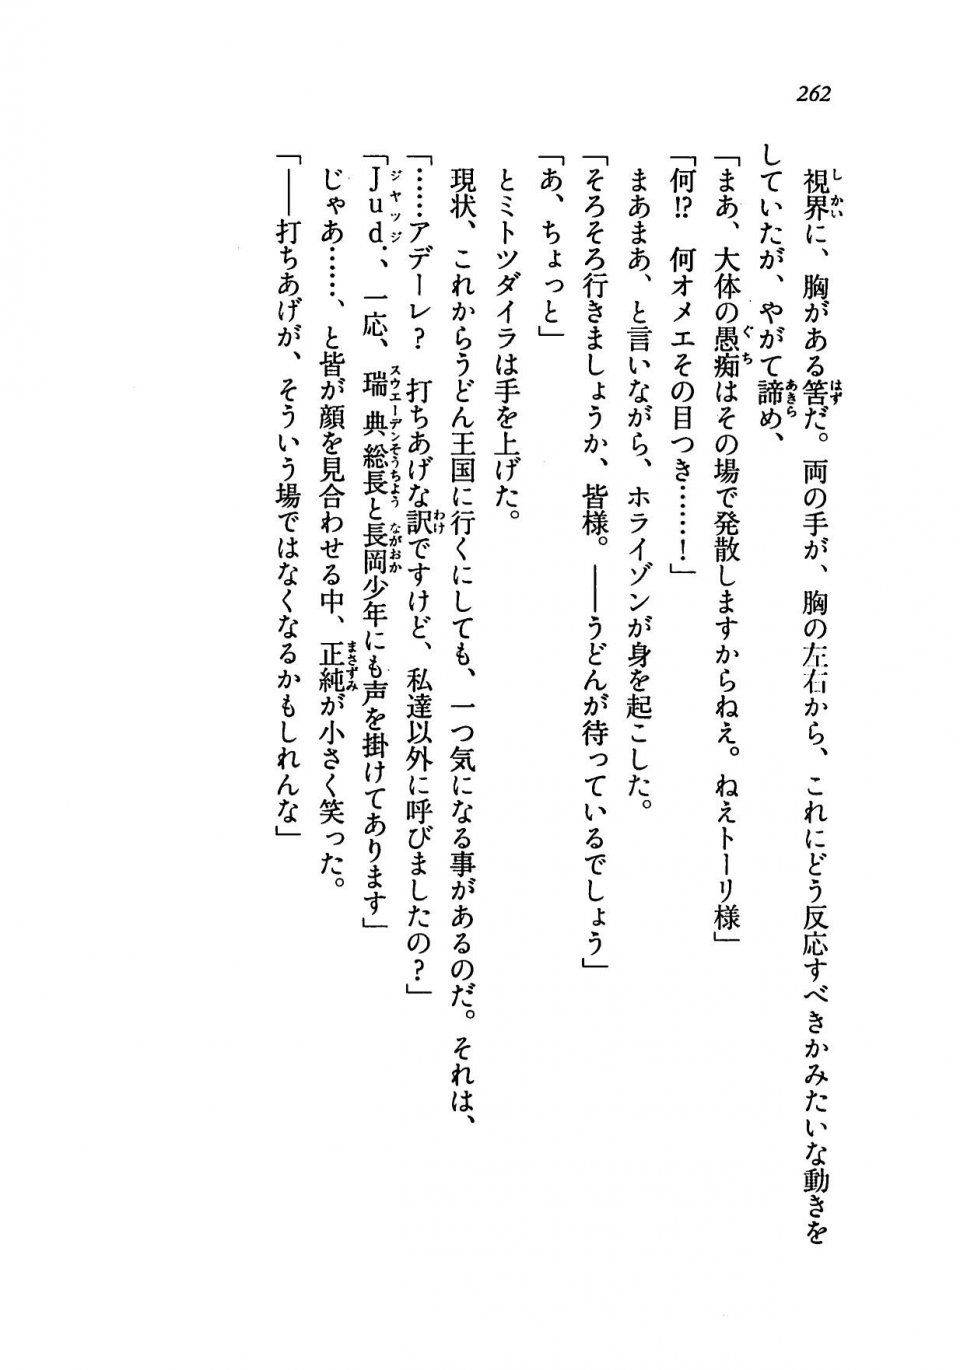 Kyoukai Senjou no Horizon LN Vol 19(8A) - Photo #262